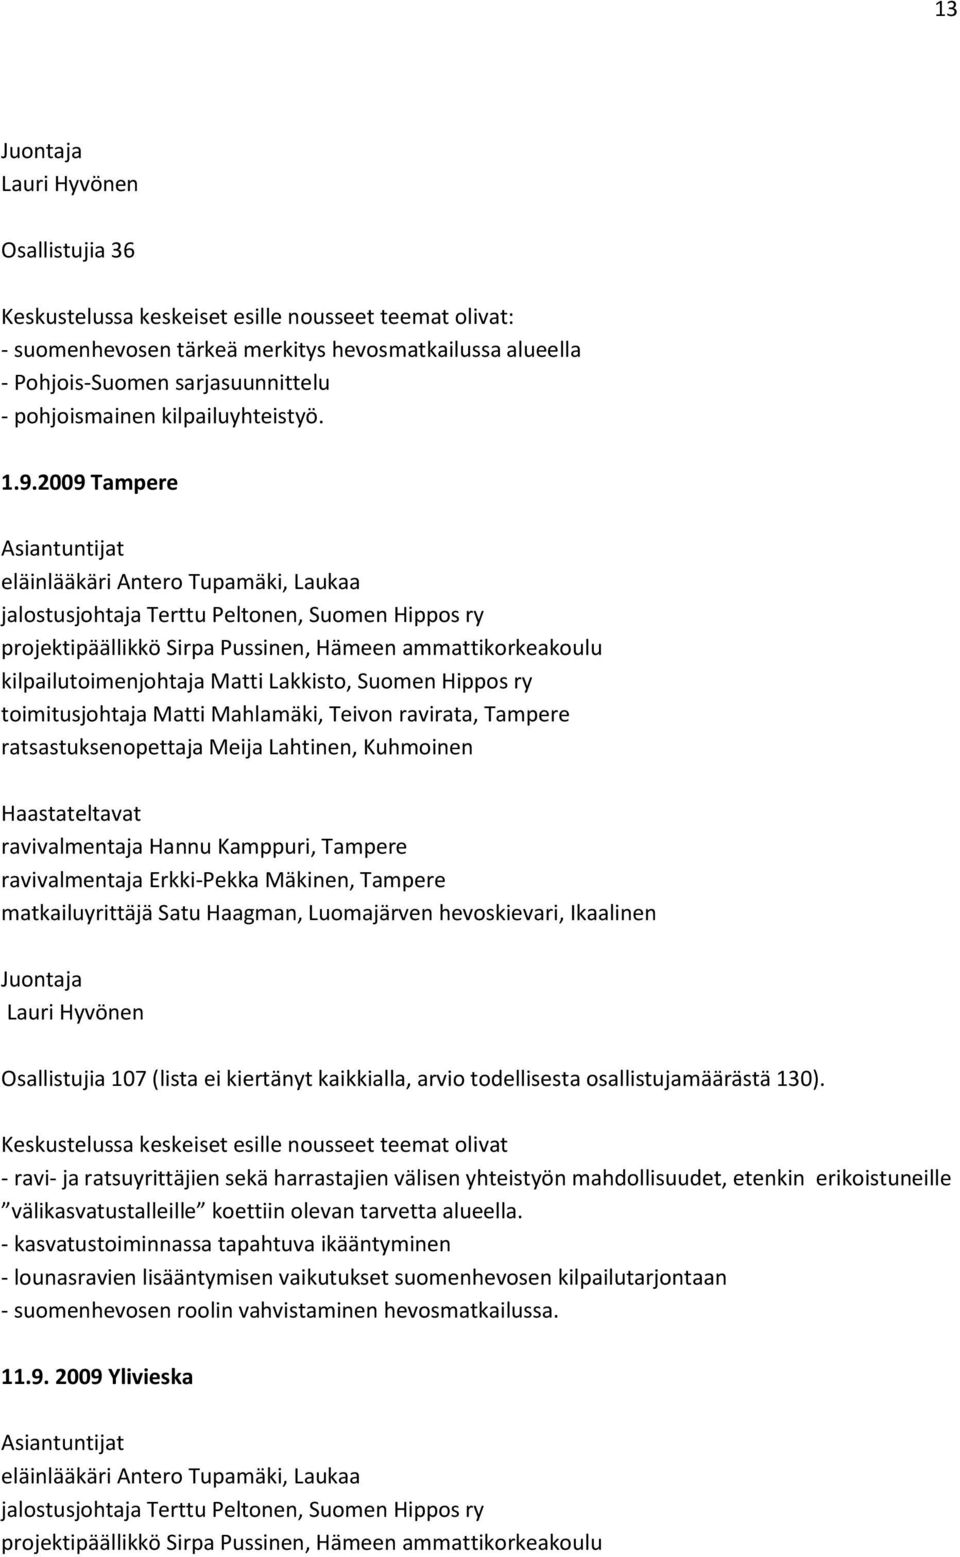 2009 Tampere Asiantuntijat eläinlääkäri Antero Tupamäki, Laukaa jalostusjohtaja Terttu Peltonen, Suomen Hippos ry projektipäällikkö Sirpa Pussinen, Hämeen ammattikorkeakoulu kilpailutoimenjohtaja